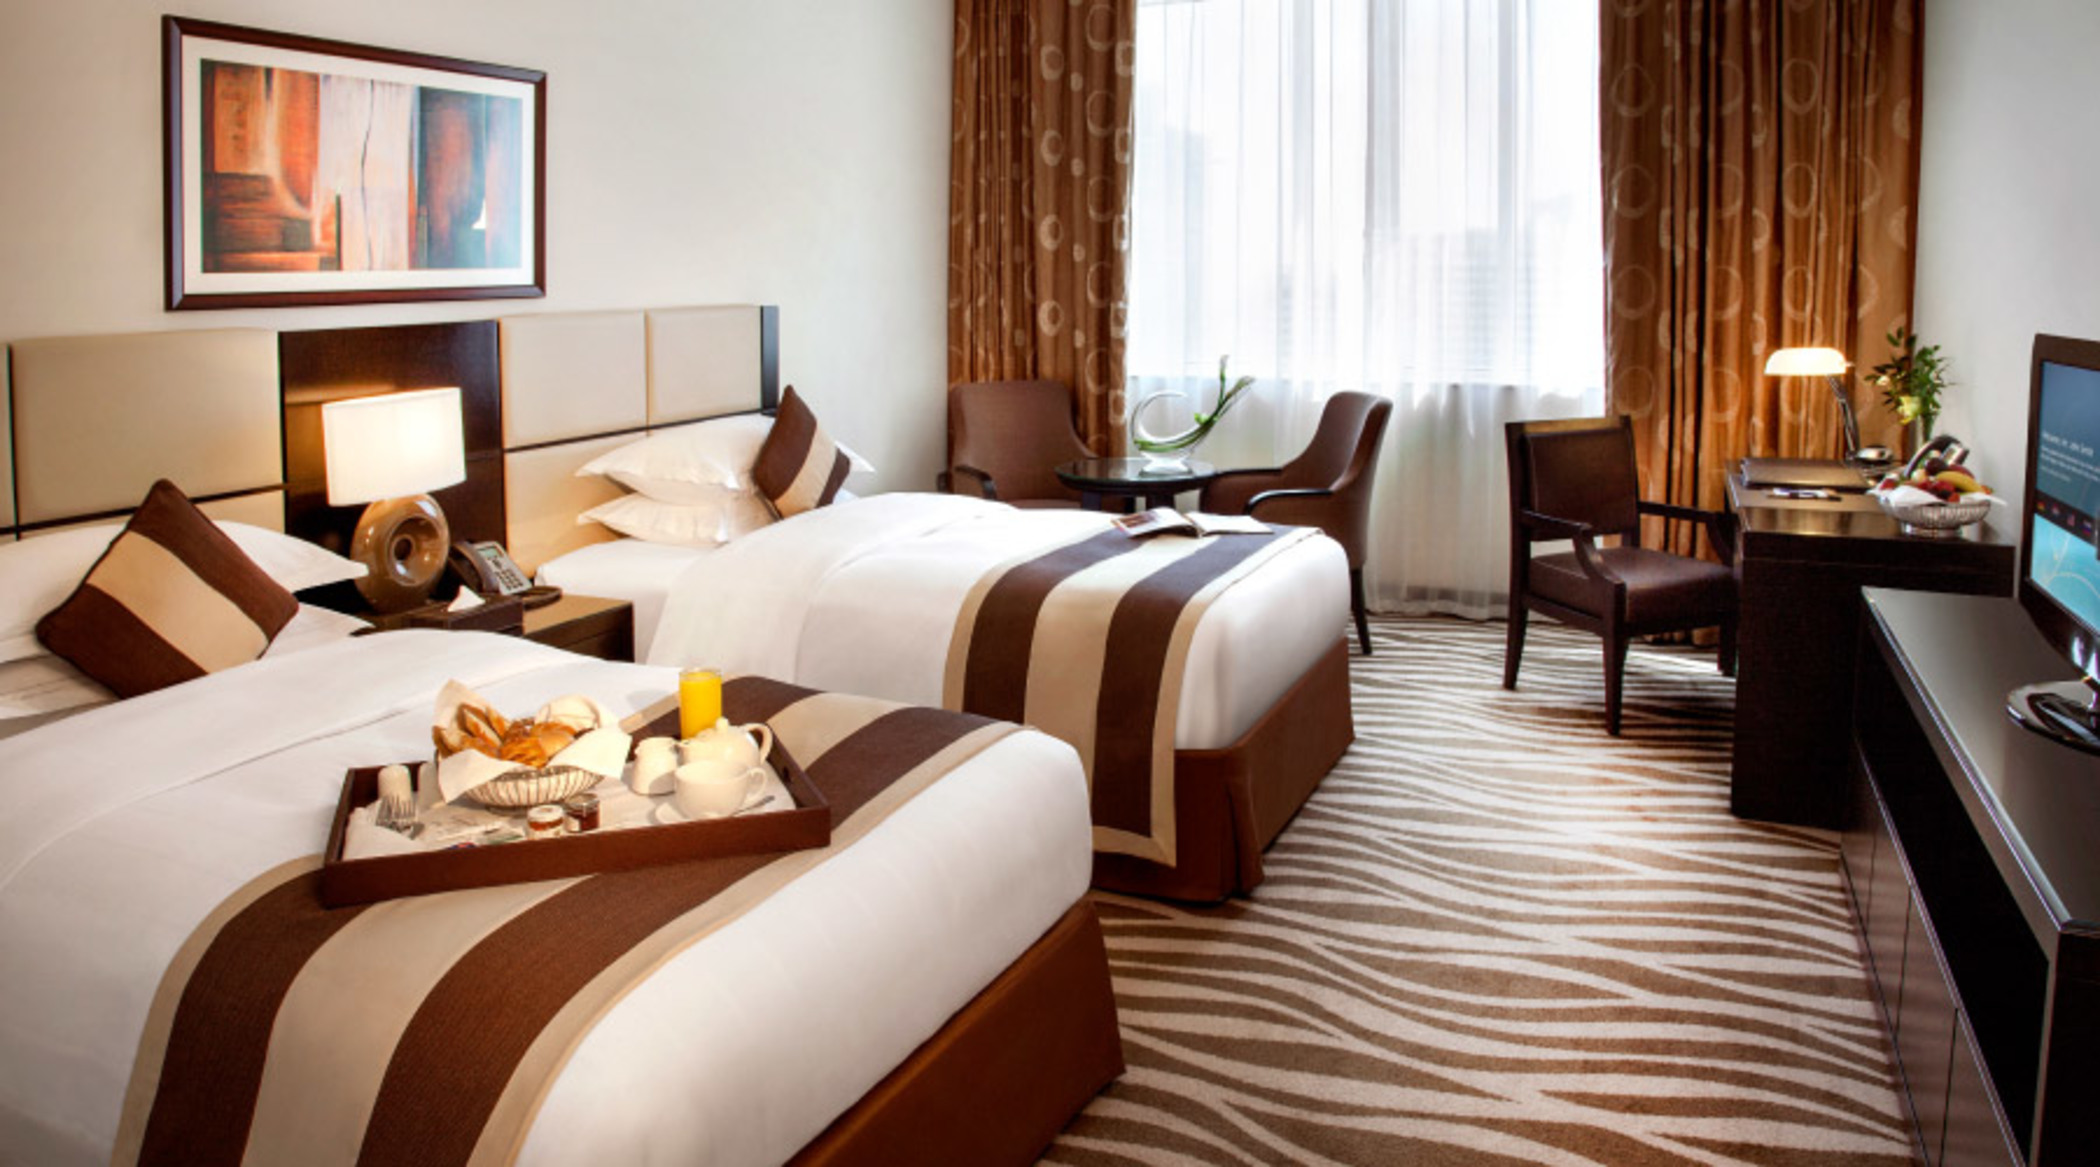 Cristal Hotel Abu Dhabi